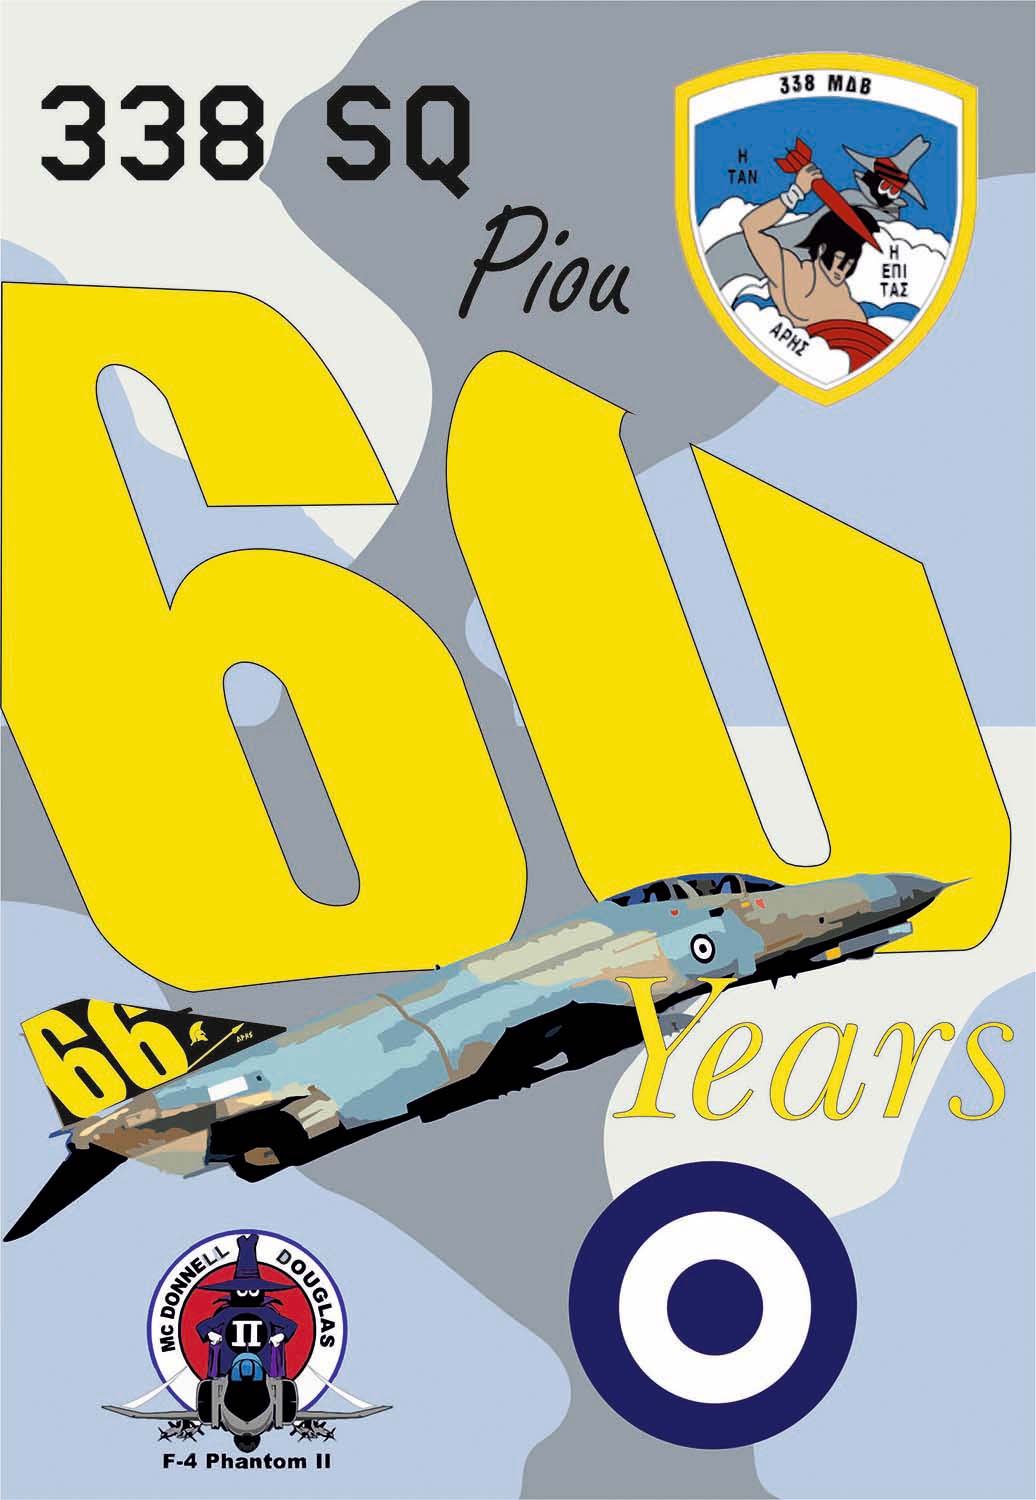 1/32 ギリシャ空軍 F-4Eファントム 第338飛行隊 60(66)周年 "PIOU" デカールセット